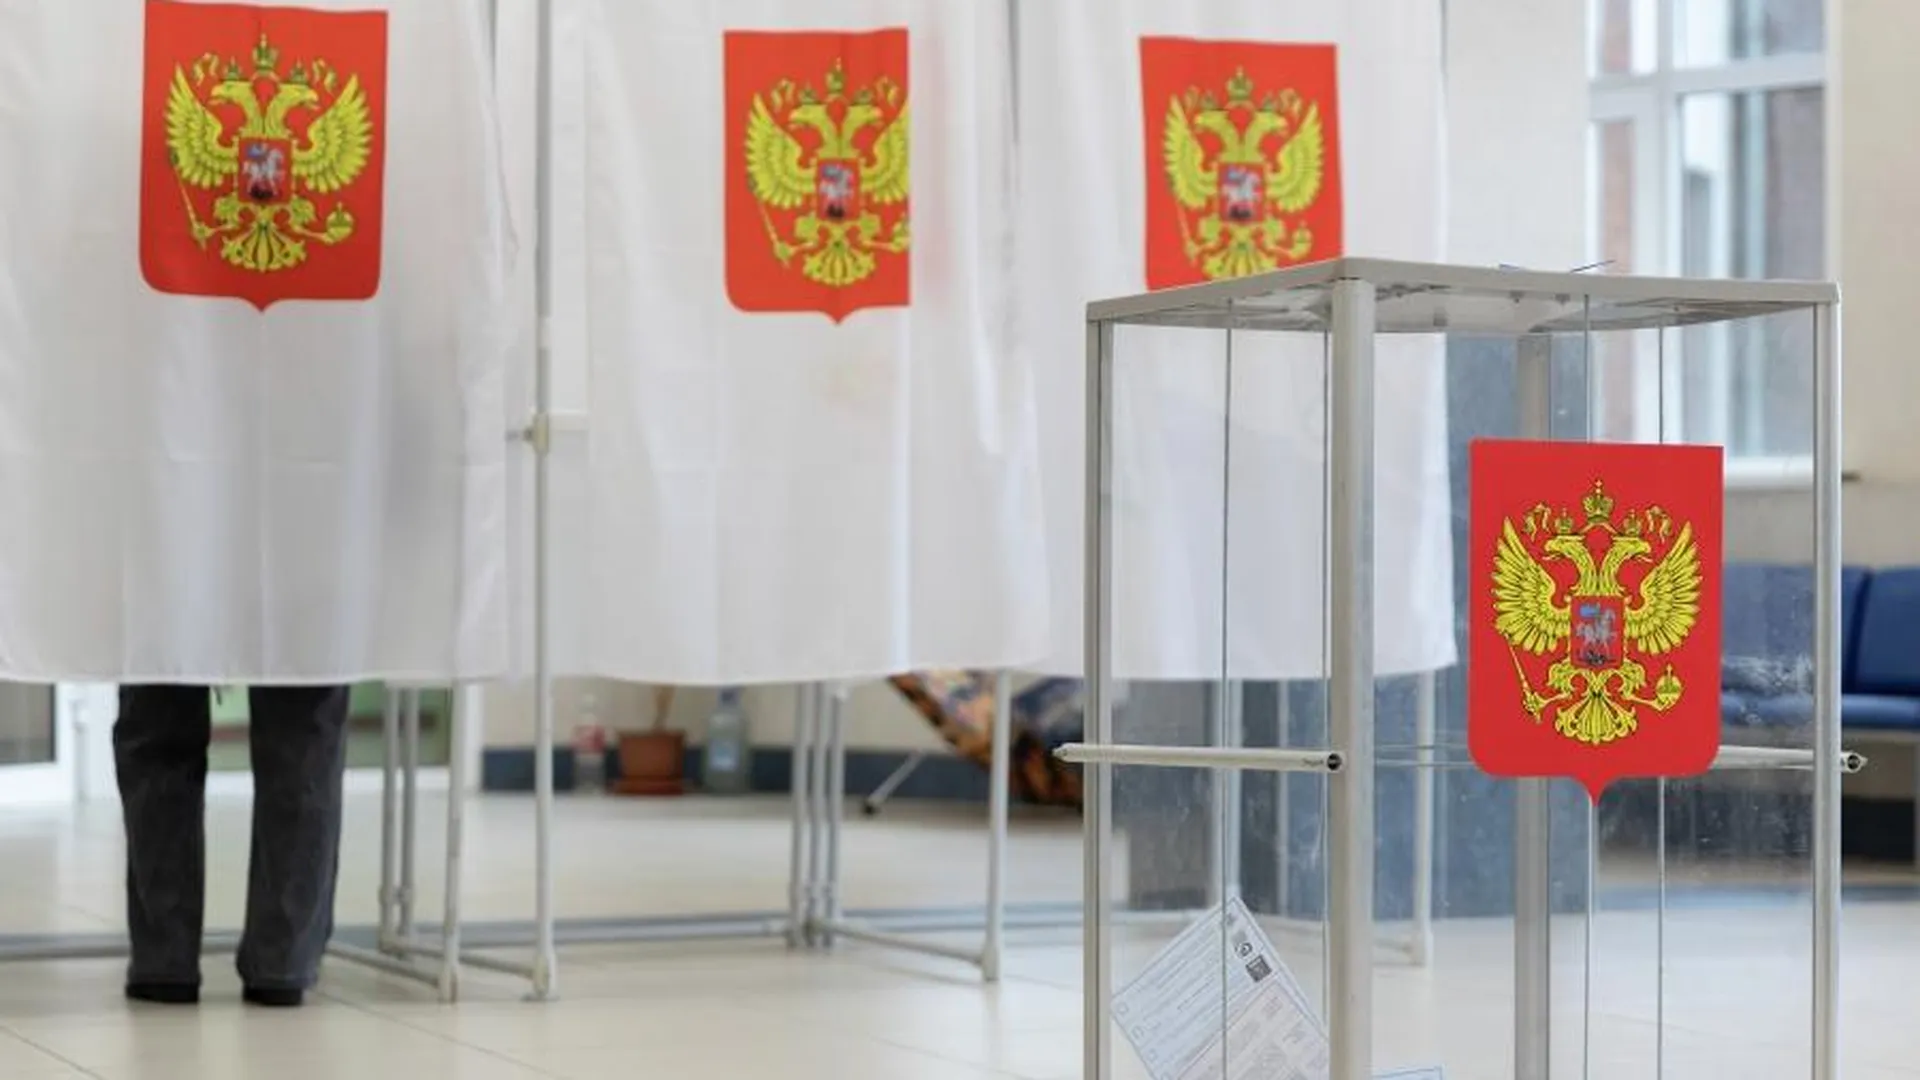 Около 14 тыс комплексов обработки бюллетеней будет на выборах президента РФ